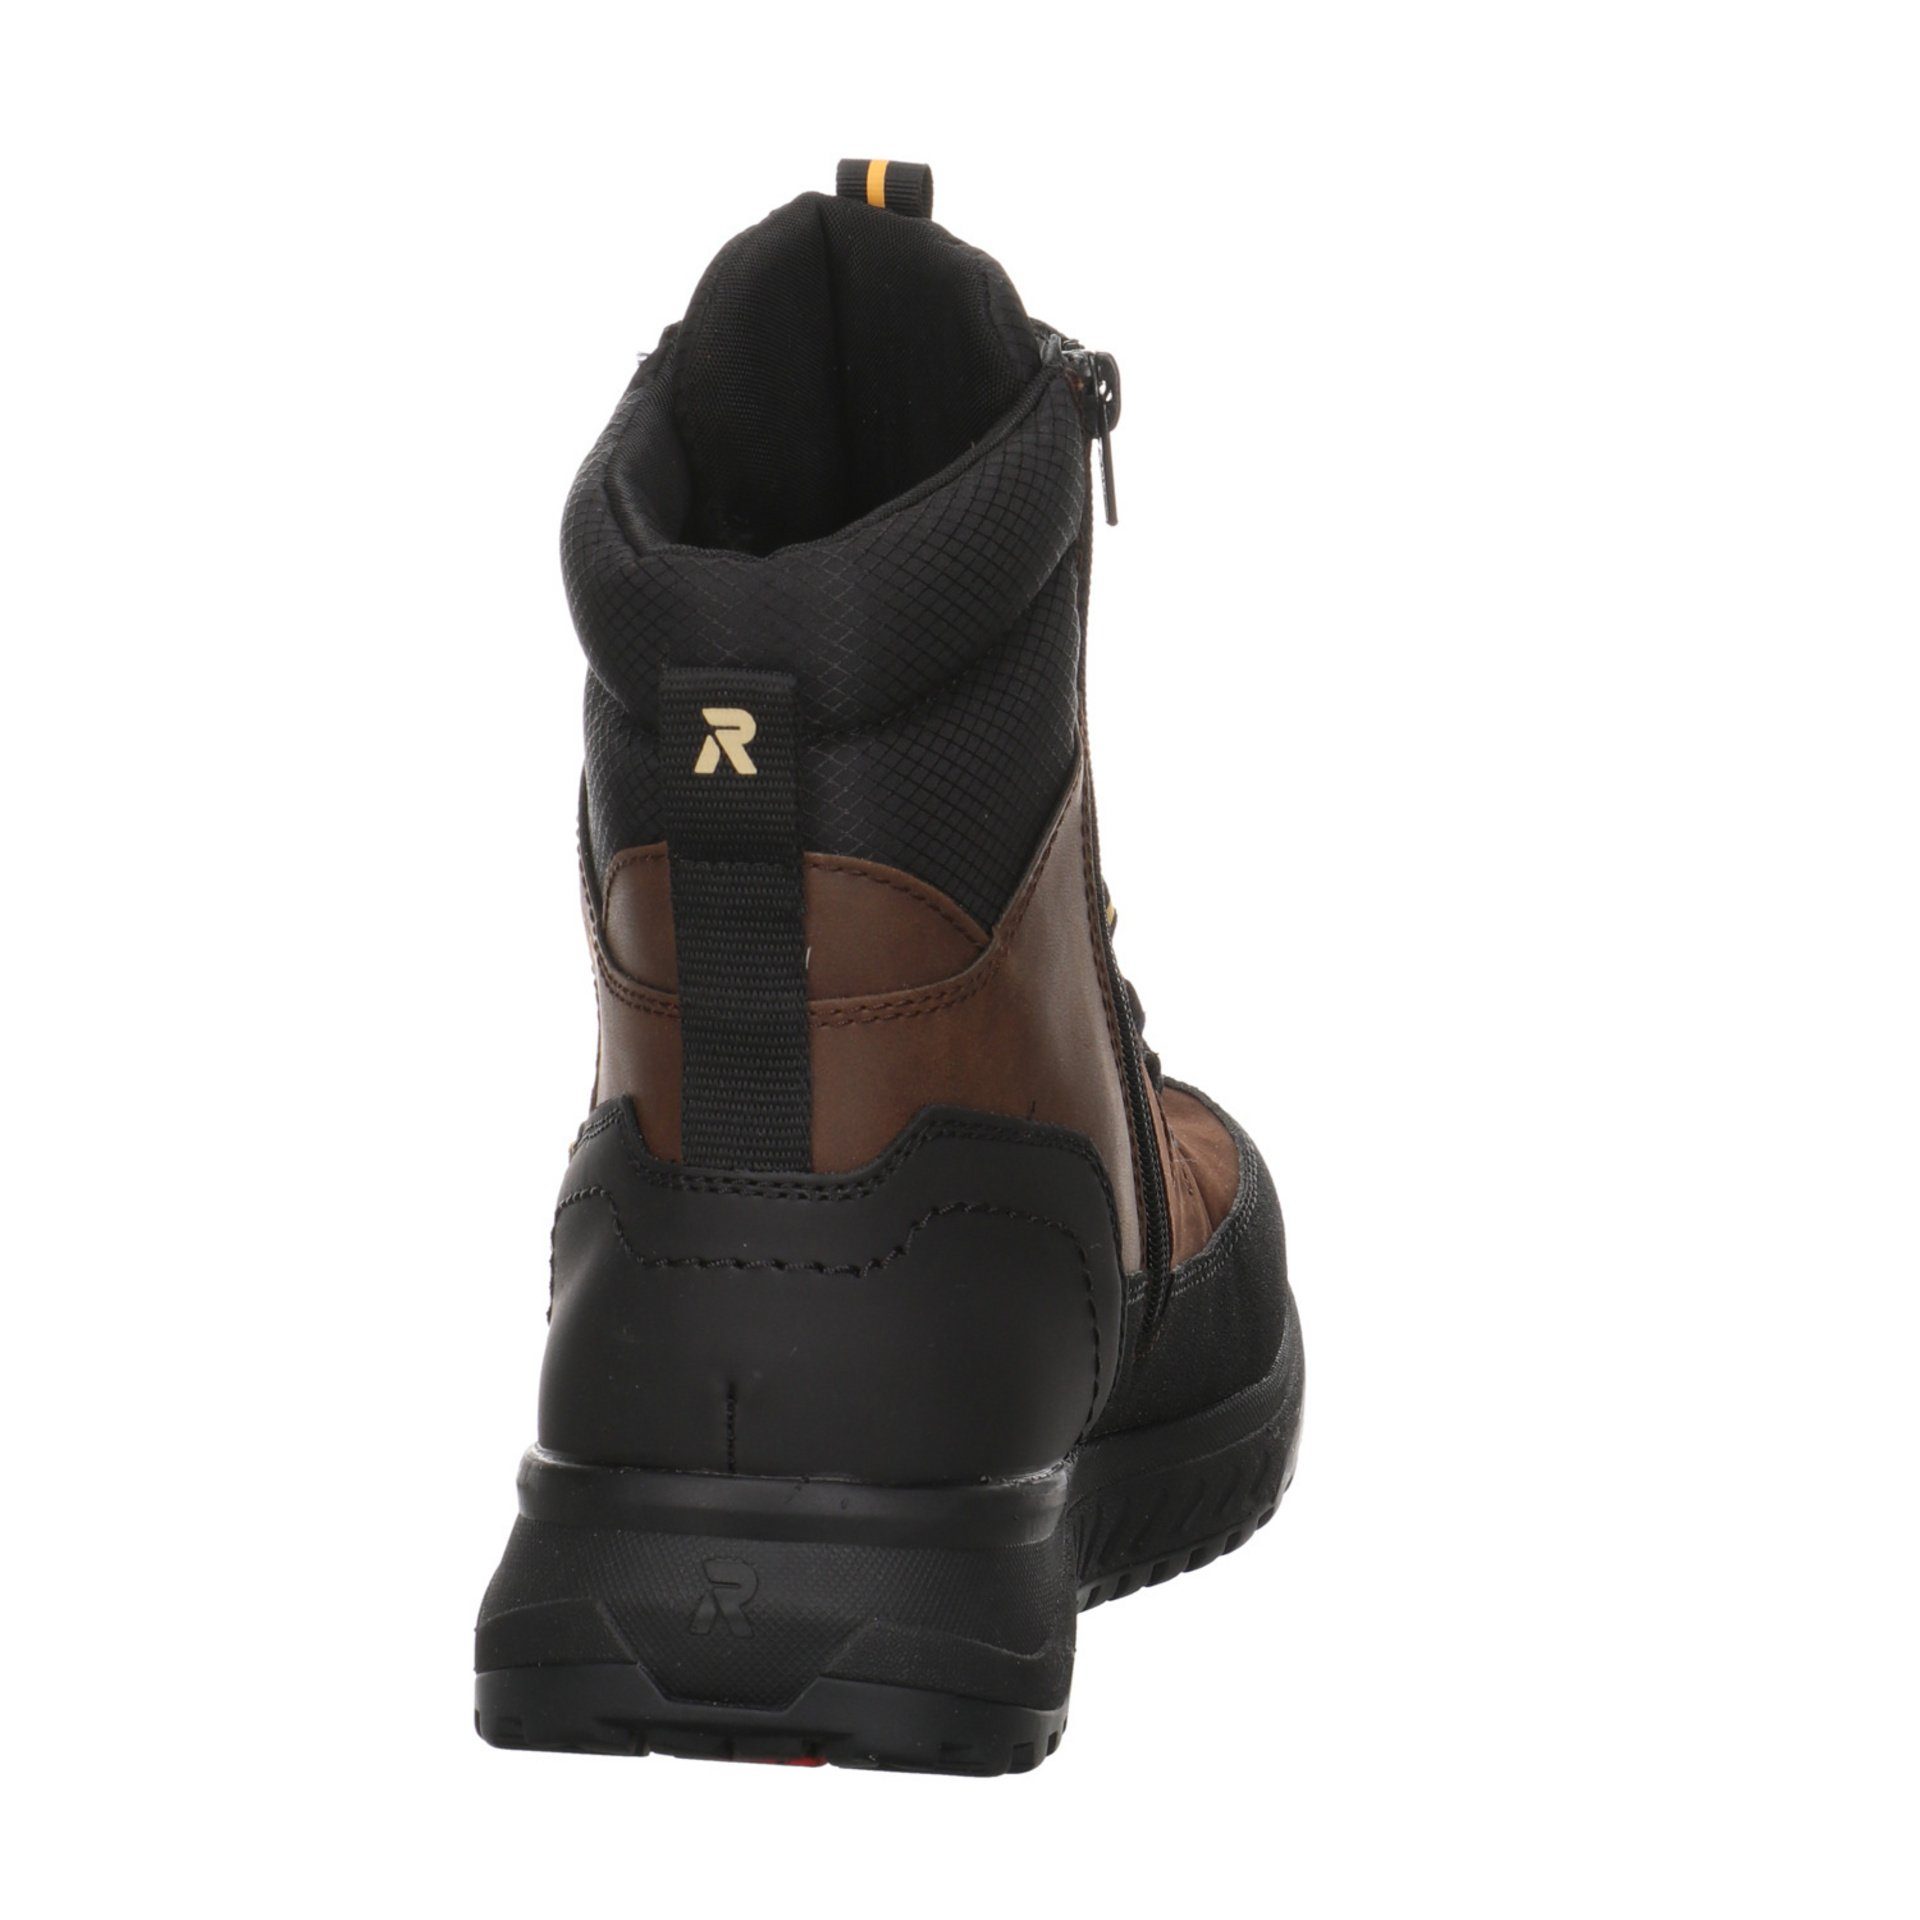 Rieker Herren Elegant Freizeit dunkel Schuhe Boots Snowboots Leder-/Textilkombination braun Winterstiefel